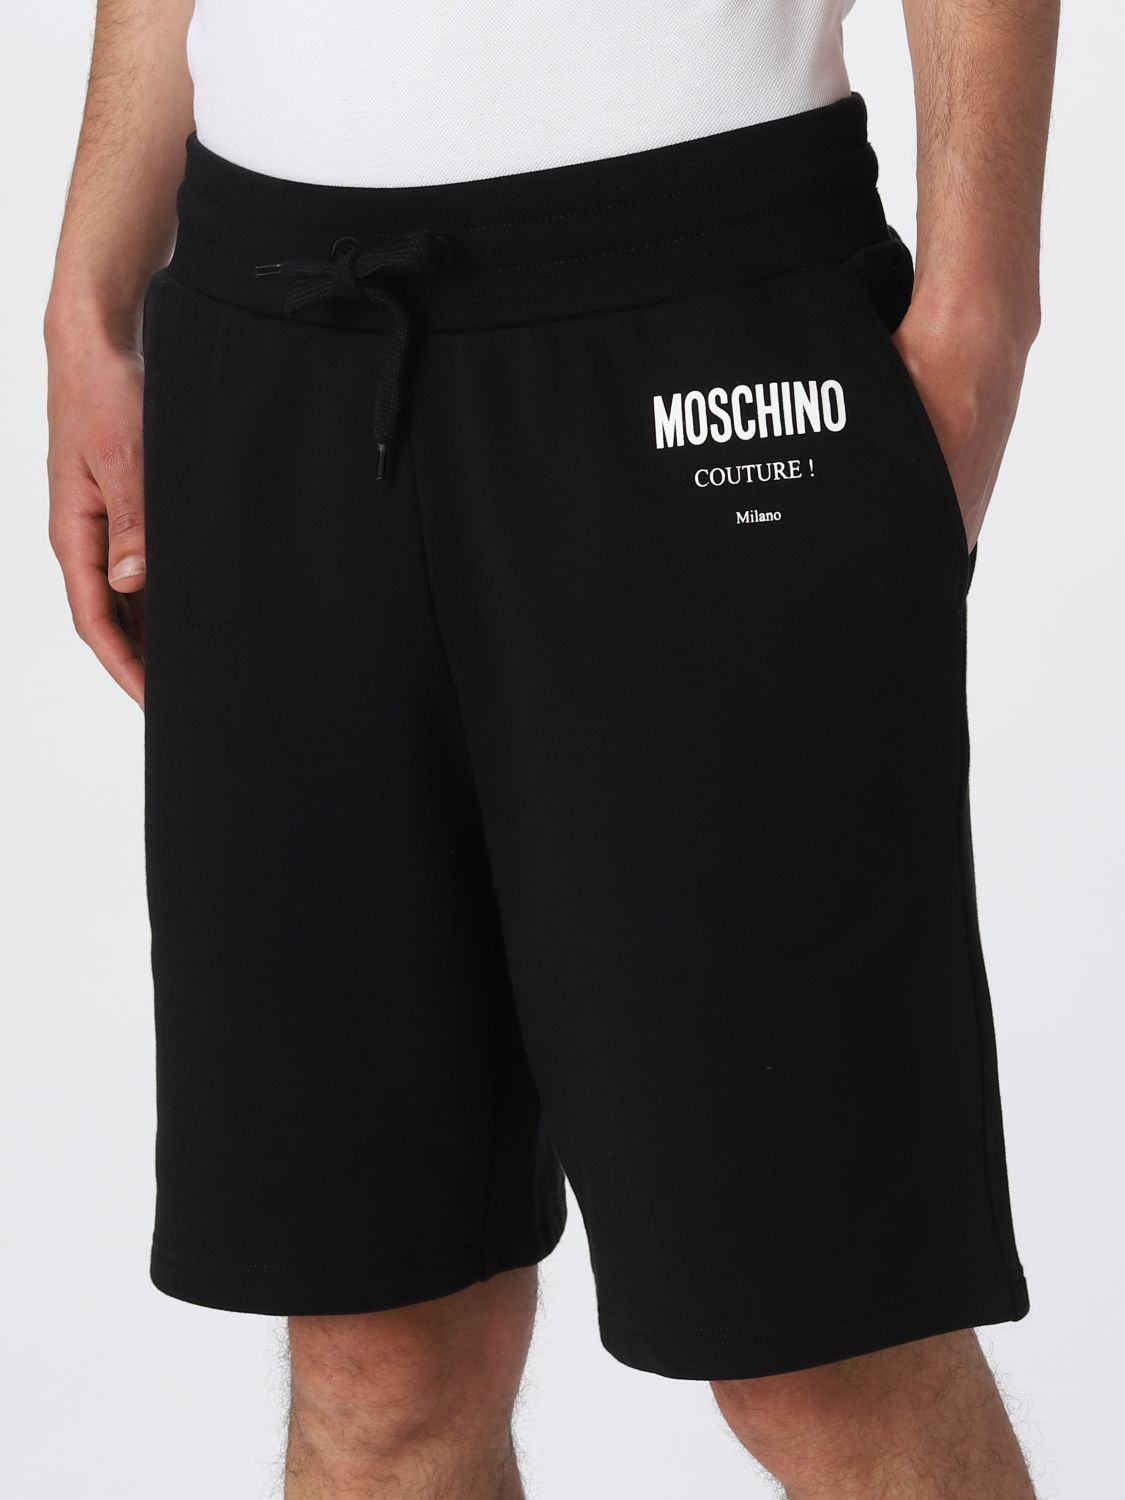 ショートパンツ モスキーノ: ショートパンツ Moschino Couture メンズ ブラック 4